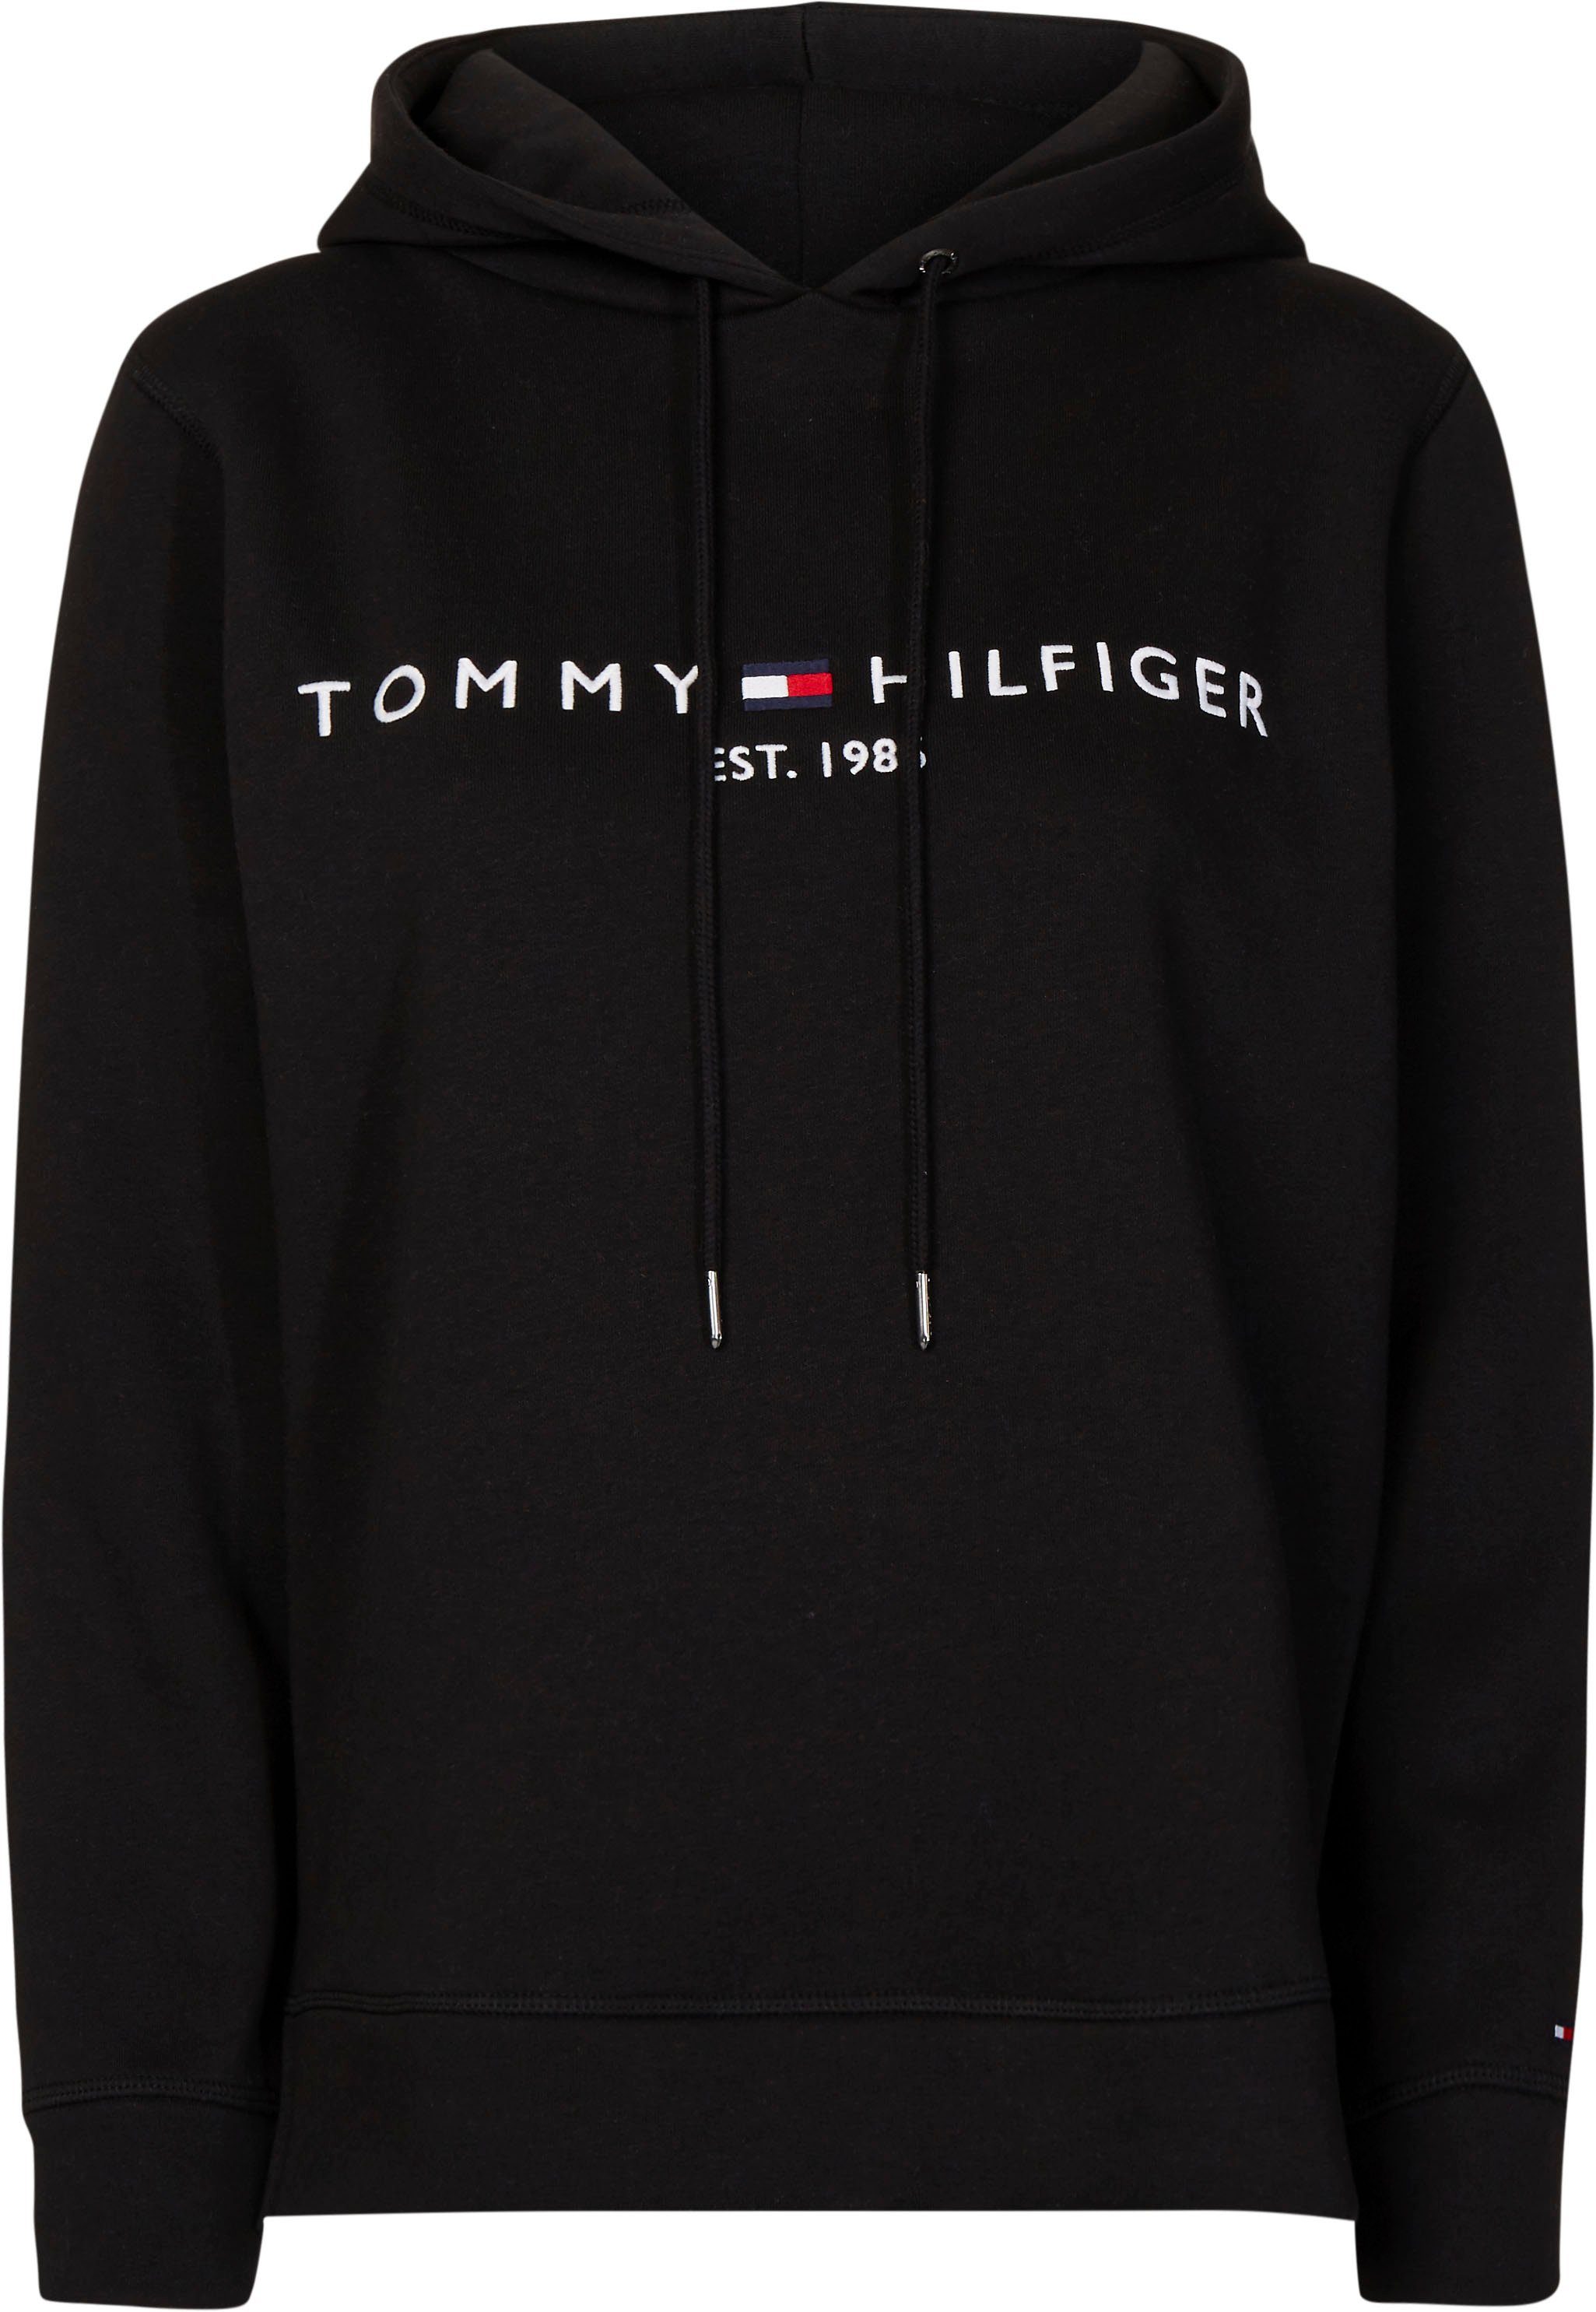 Schwarze Tommy Hilfiger Herren Sweatshirts kaufen | OTTO